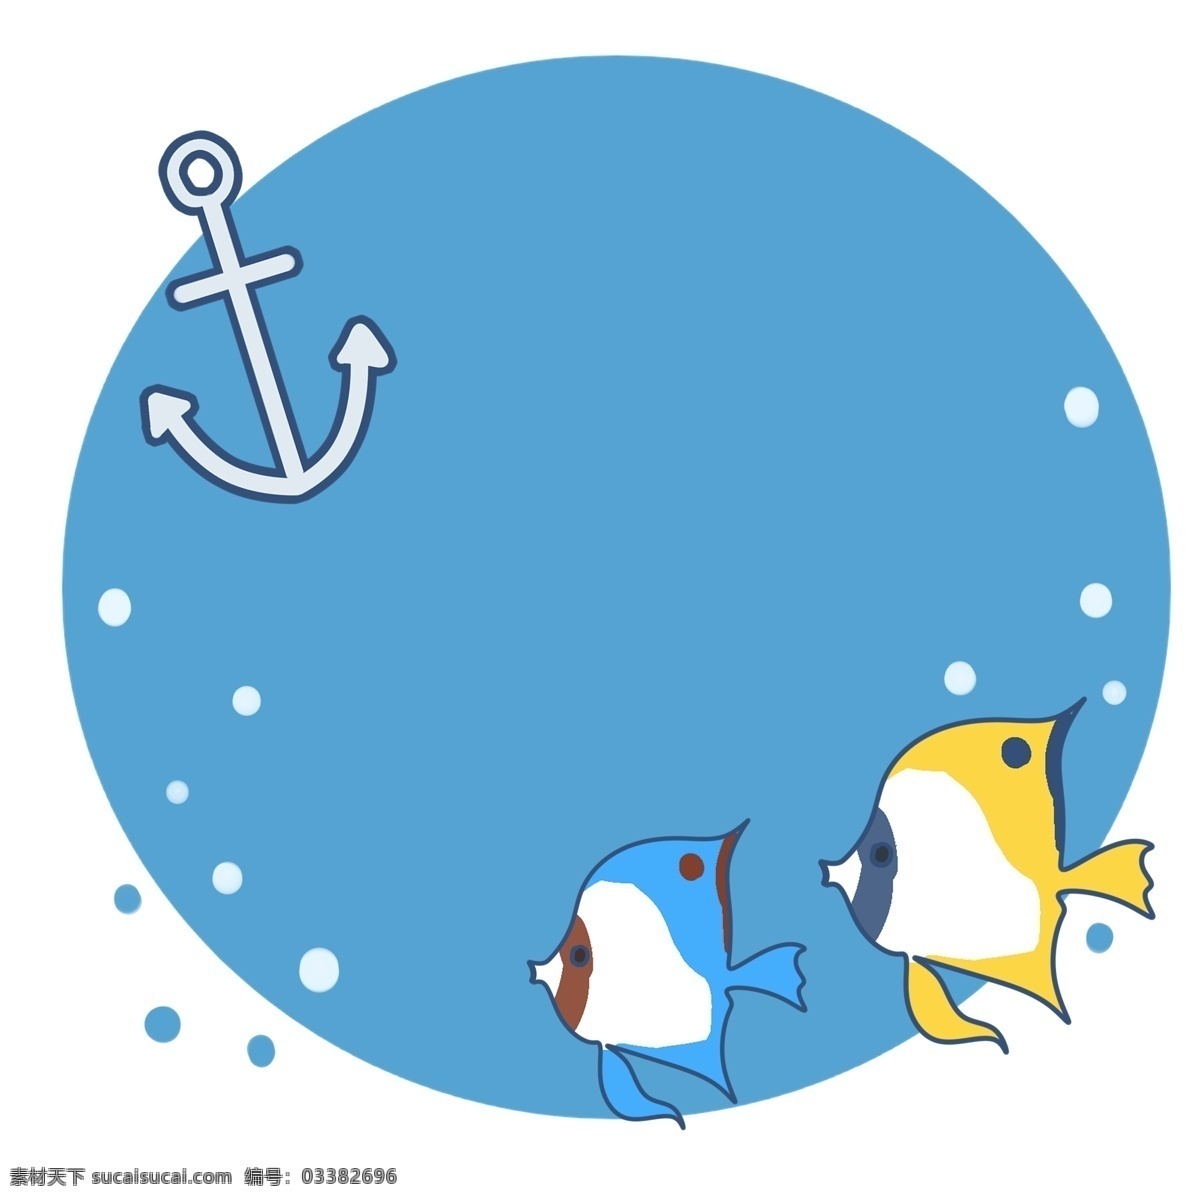 蓝色 小鱼 边框 插画 手绘小鱼边框 卡通小鱼边框 小鱼边框装饰 海洋边框 创意边框